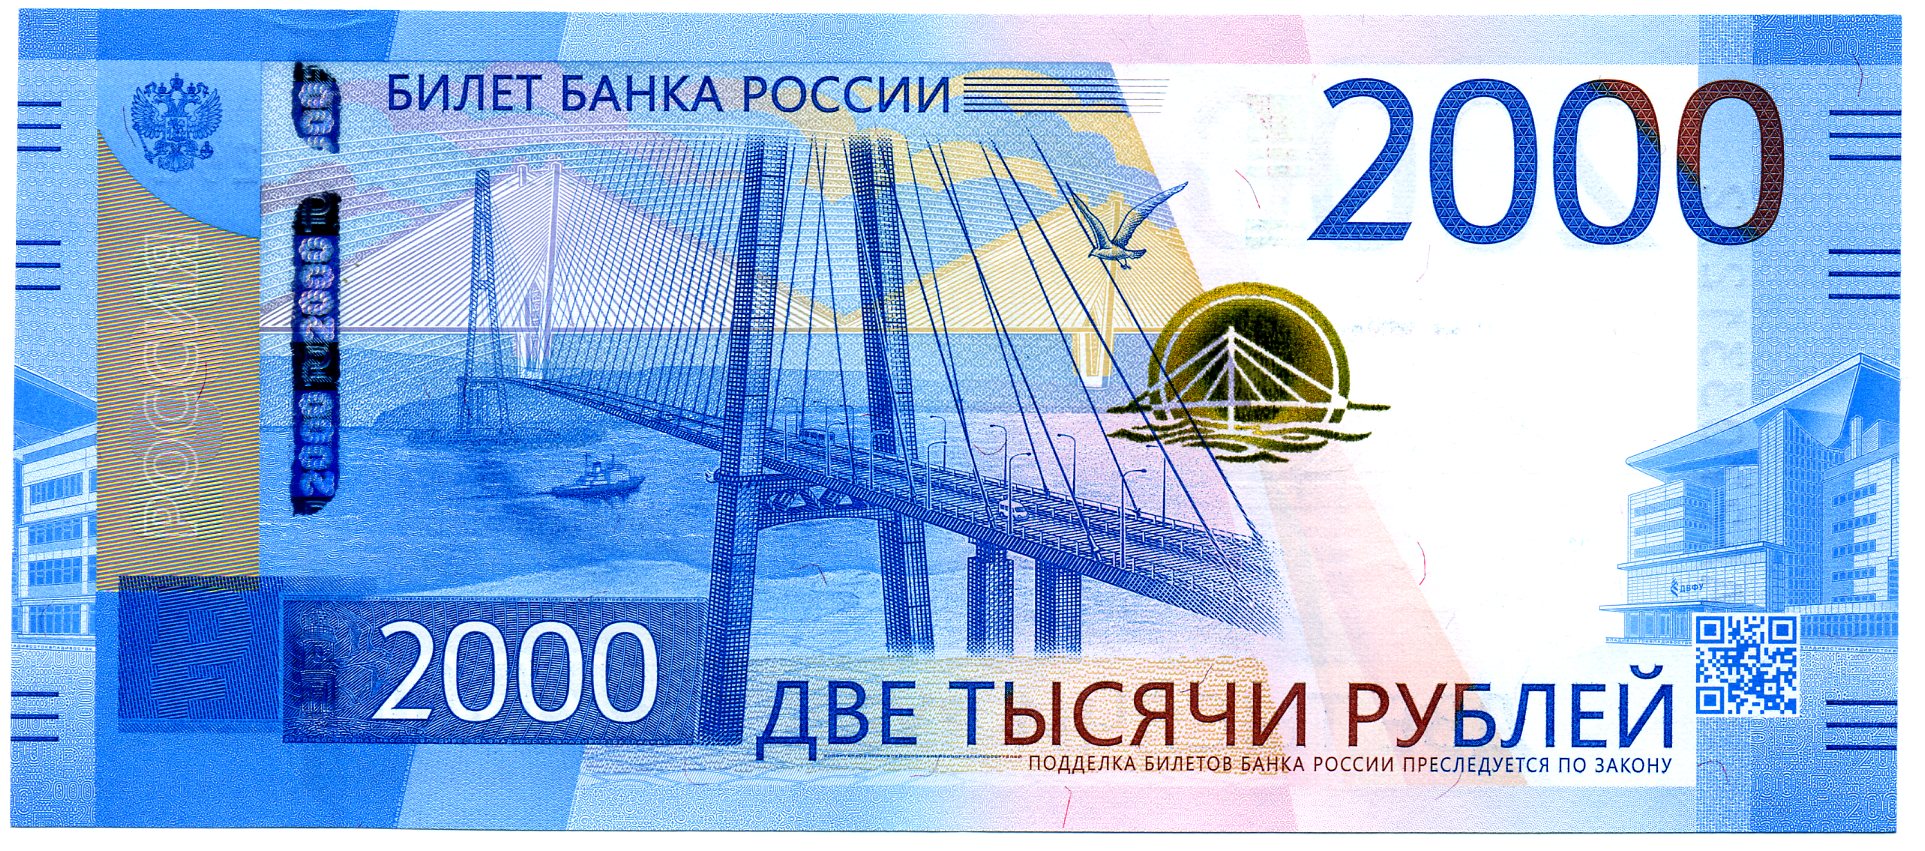 2000 рублей 2017 года. Аверс. Реферат Рефератович.